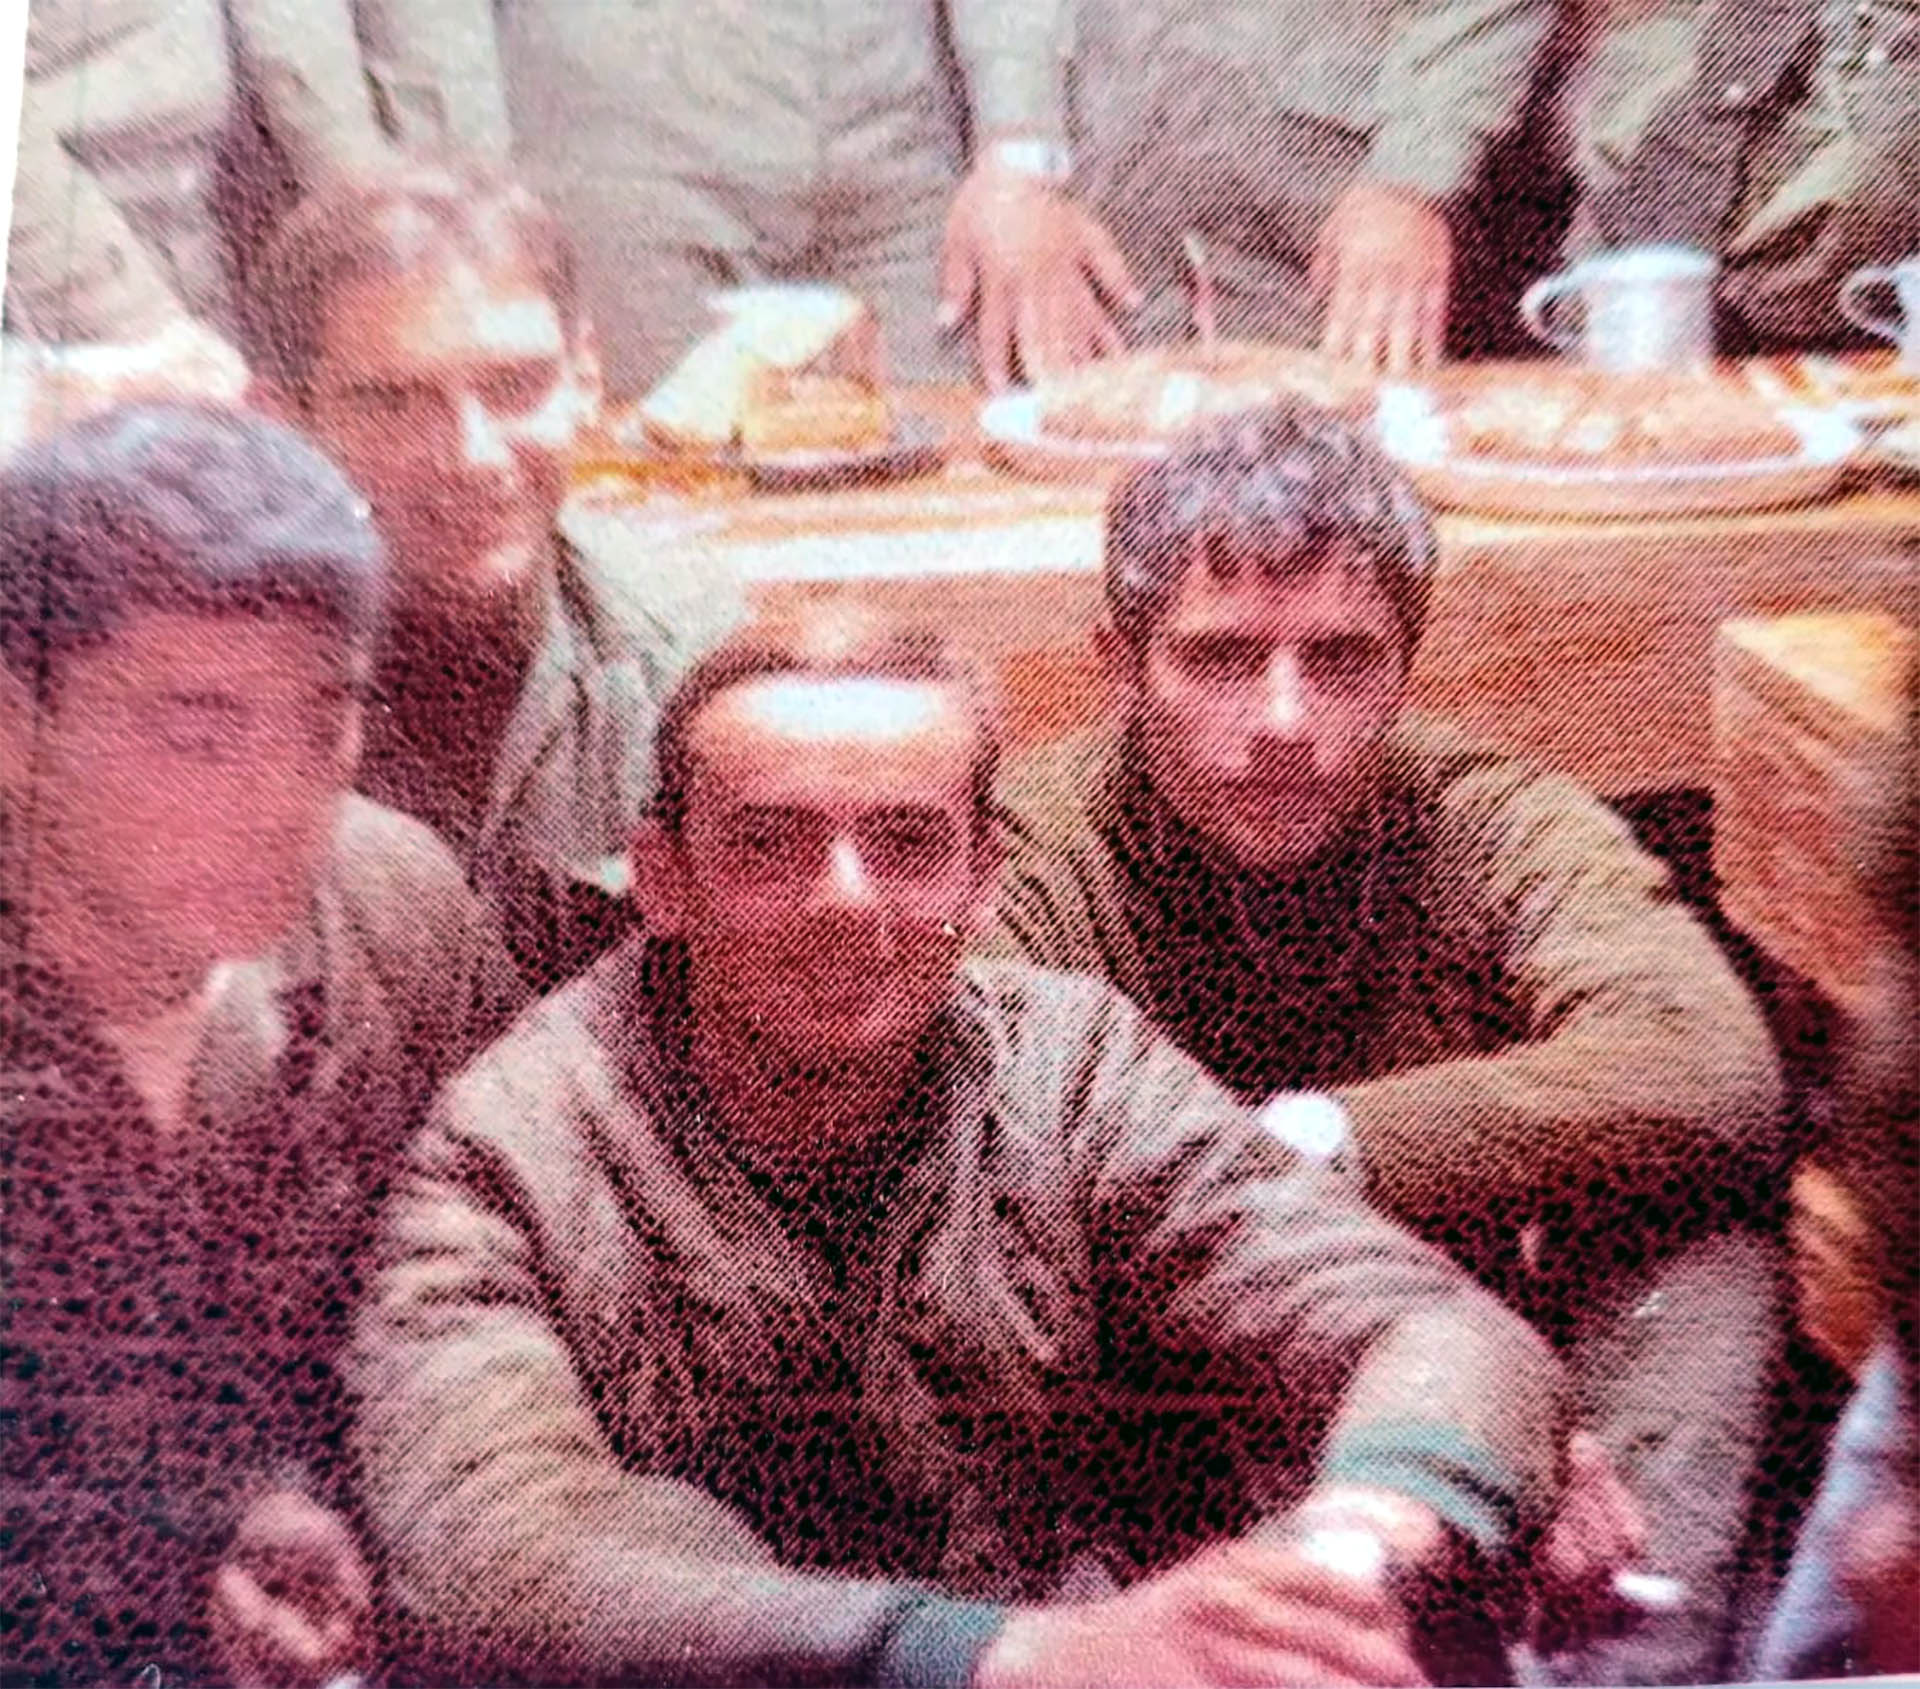 Miguel Angel y sus compañeros en una foto en las islas Malvinas durante la guerra de 1982